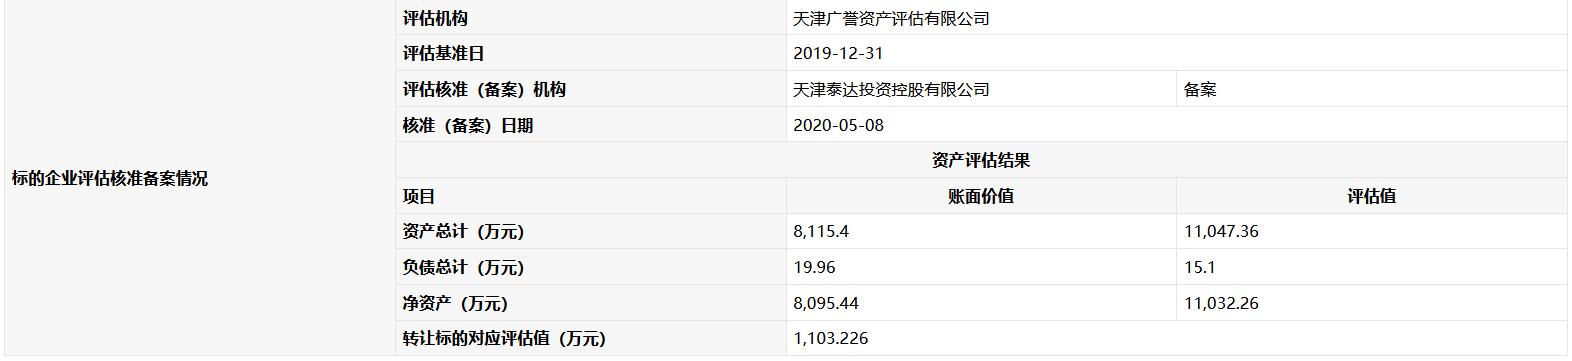 天津泰达控股拟1103万元转让泰达广洋置业10%股权-中国网地产